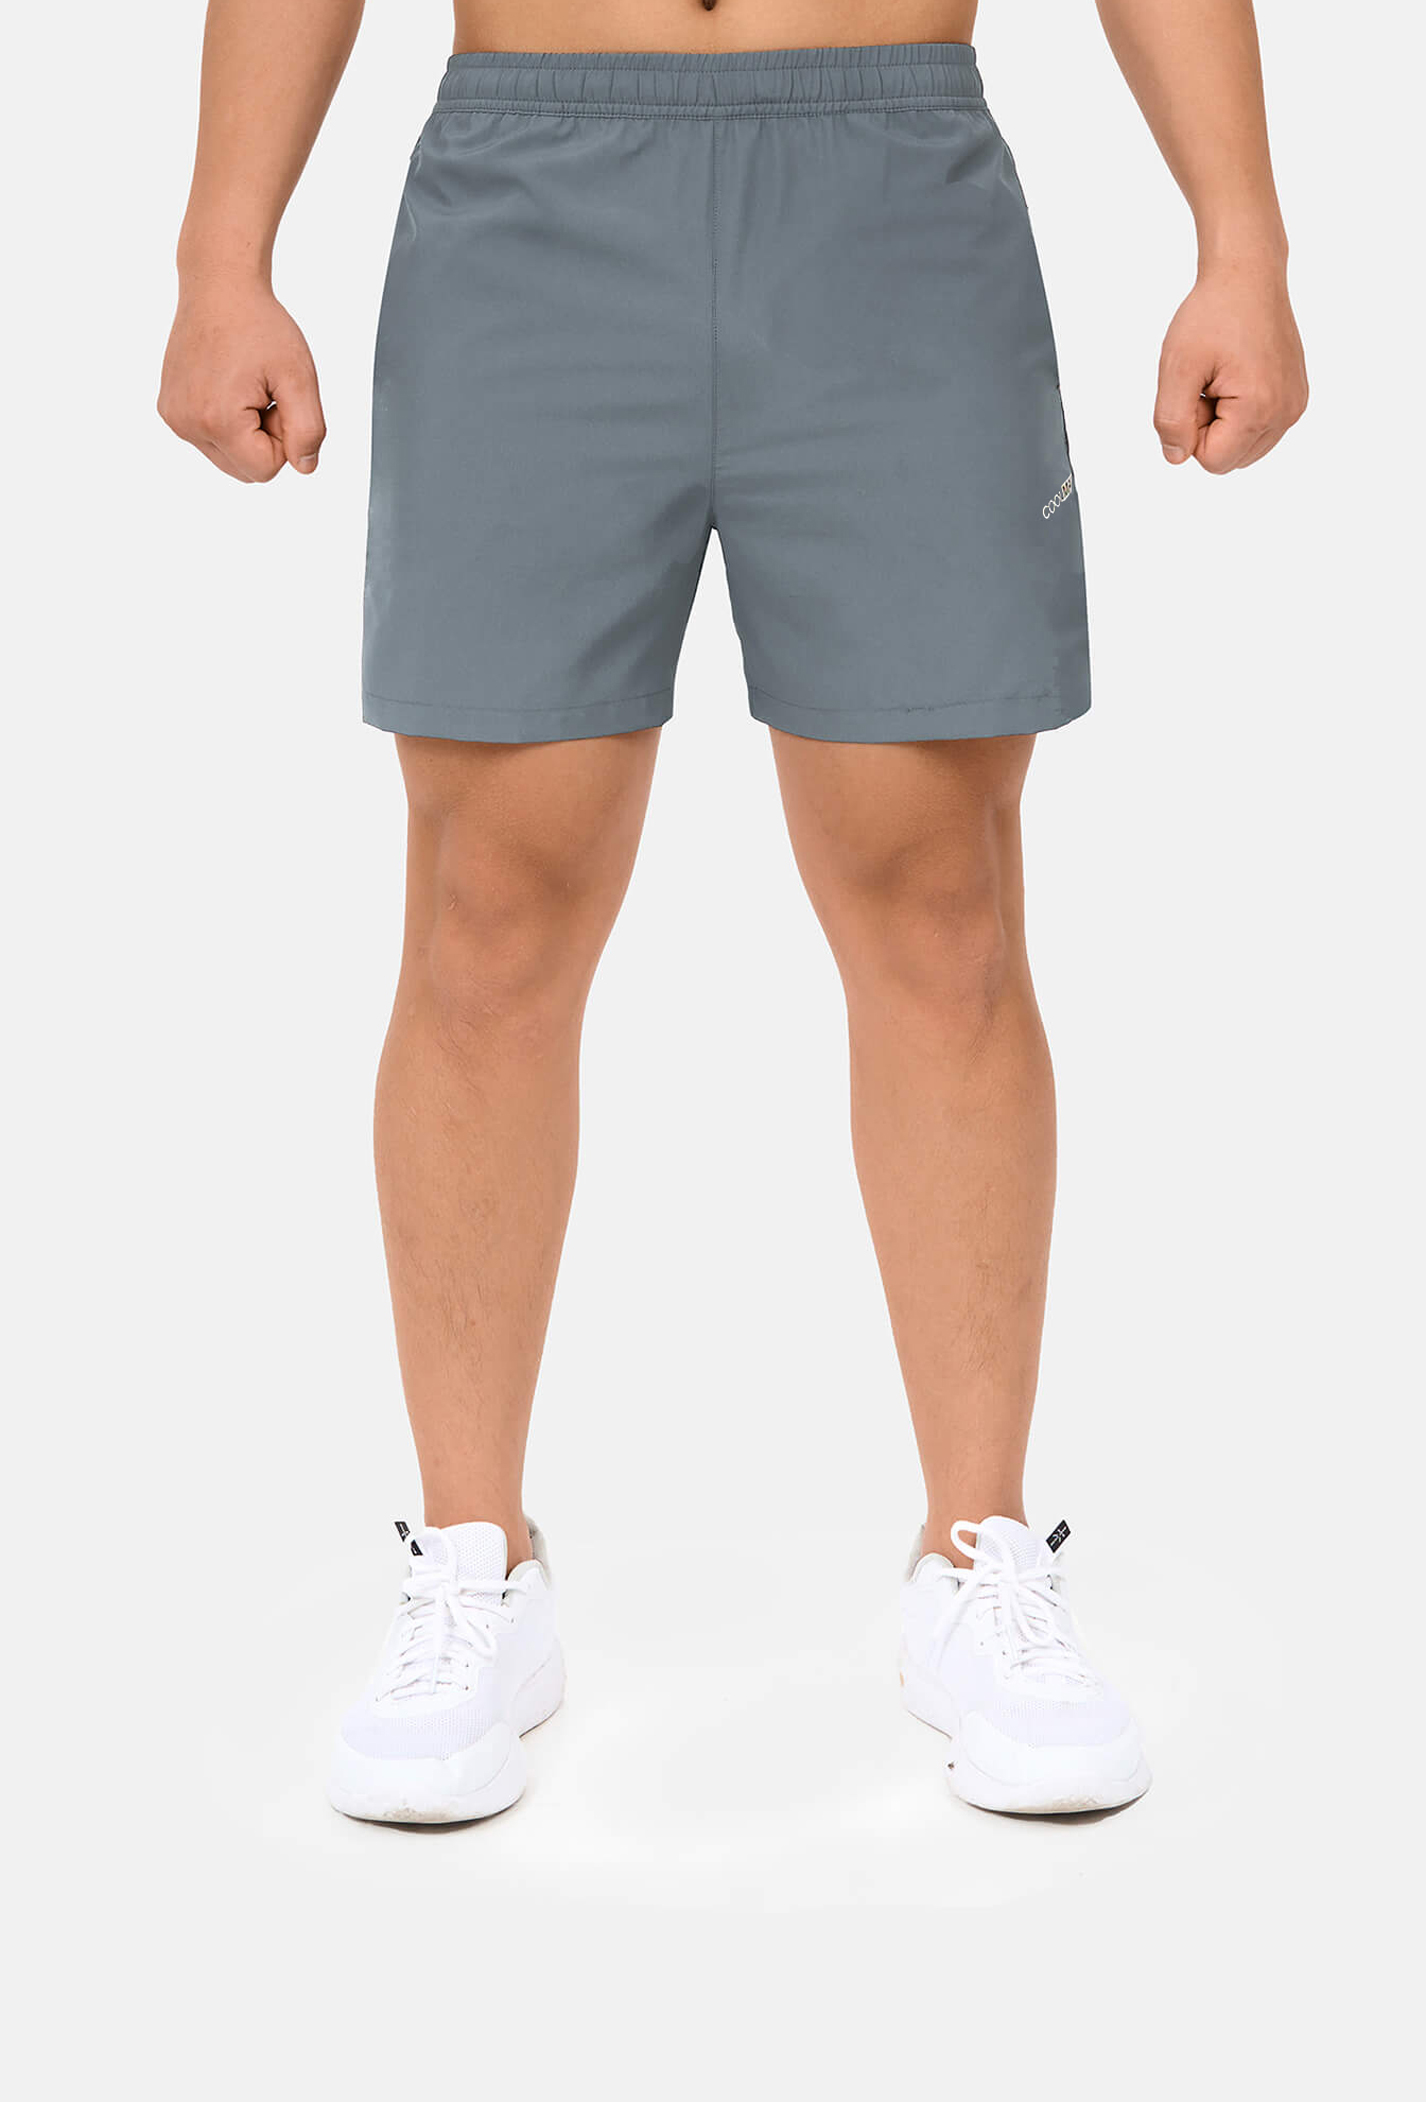 Quần shorts nam thể thao 5" xẻ gấu cao (túi sau có khóa kéo) xam-xanh